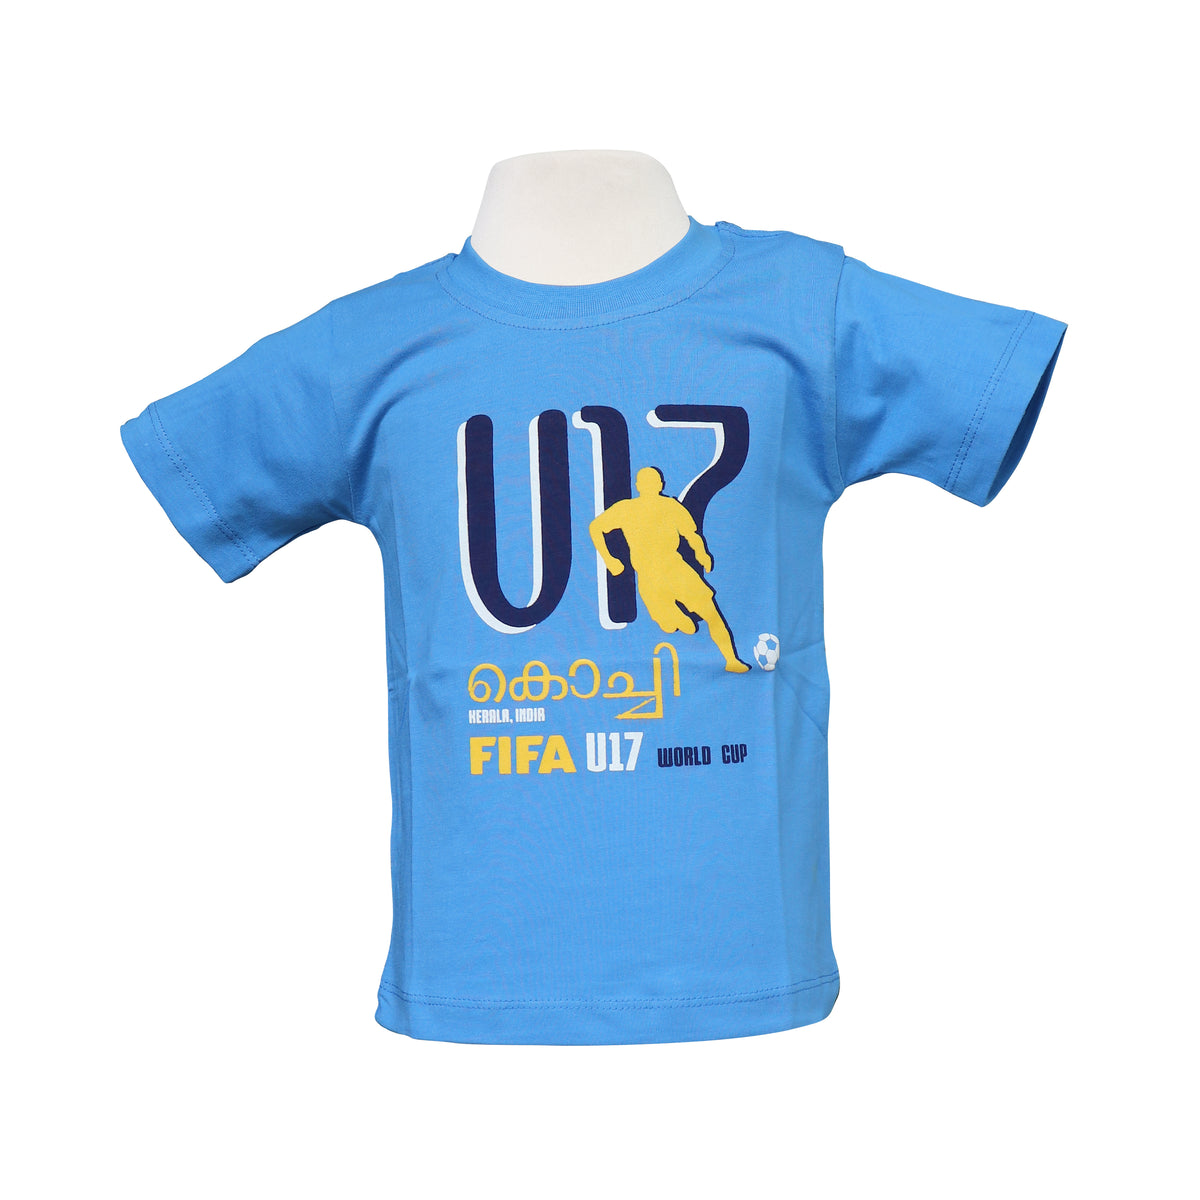 FIFA World Cup Football — Kids T-shirt (Light Blue)